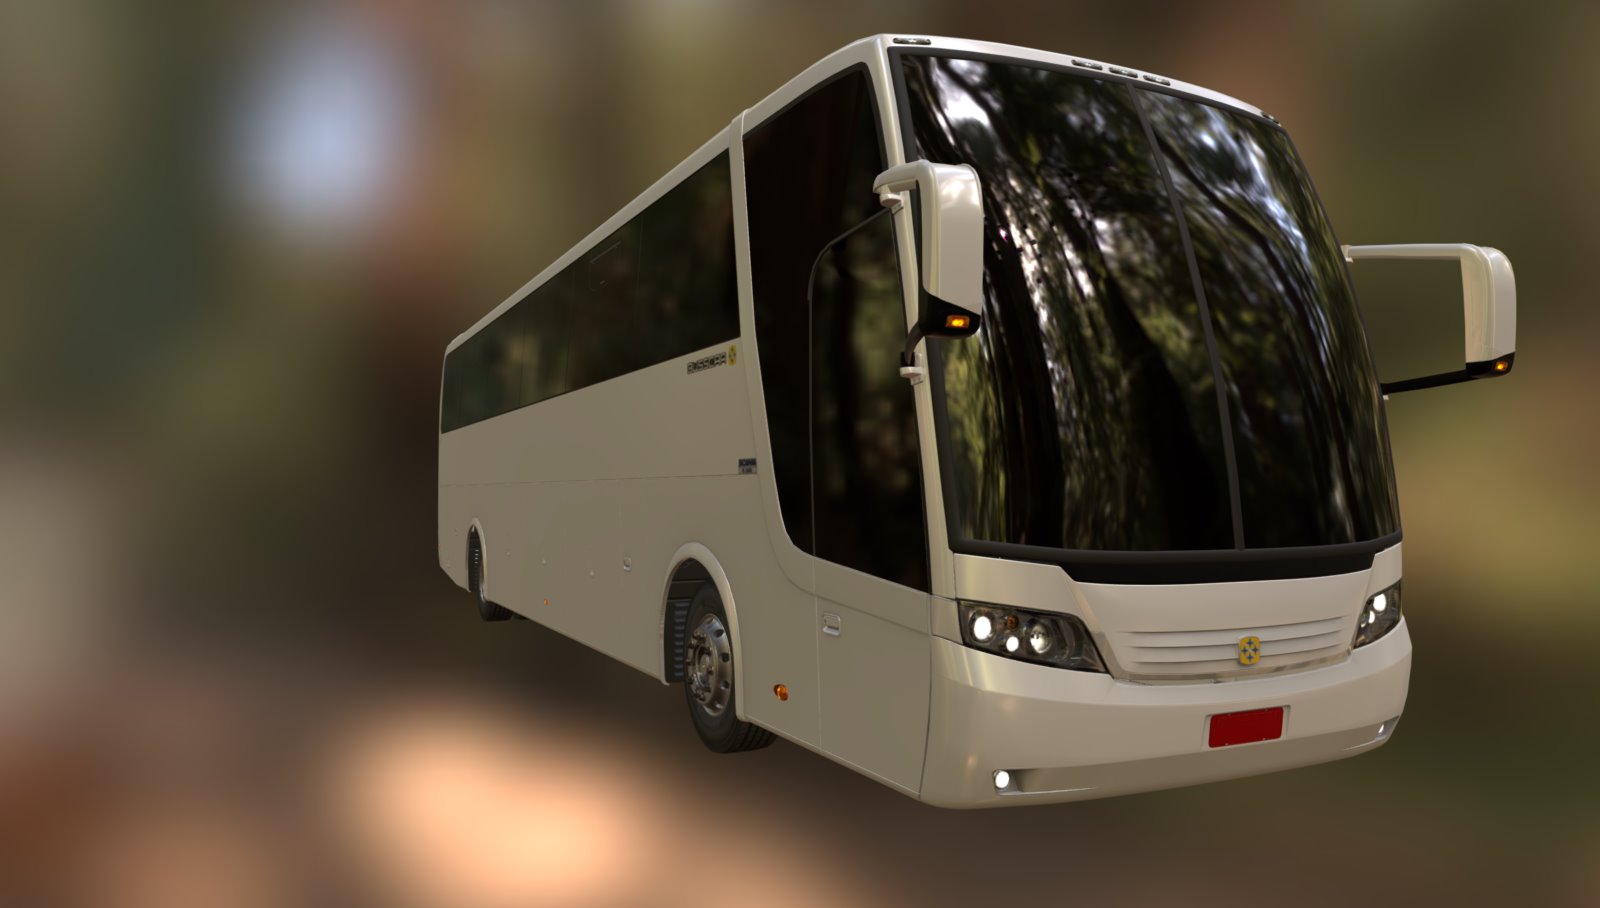 Vissta Buss HI 2007 - 3D model by Enzo Caldeirini (@enzocaldeirini) 3d model